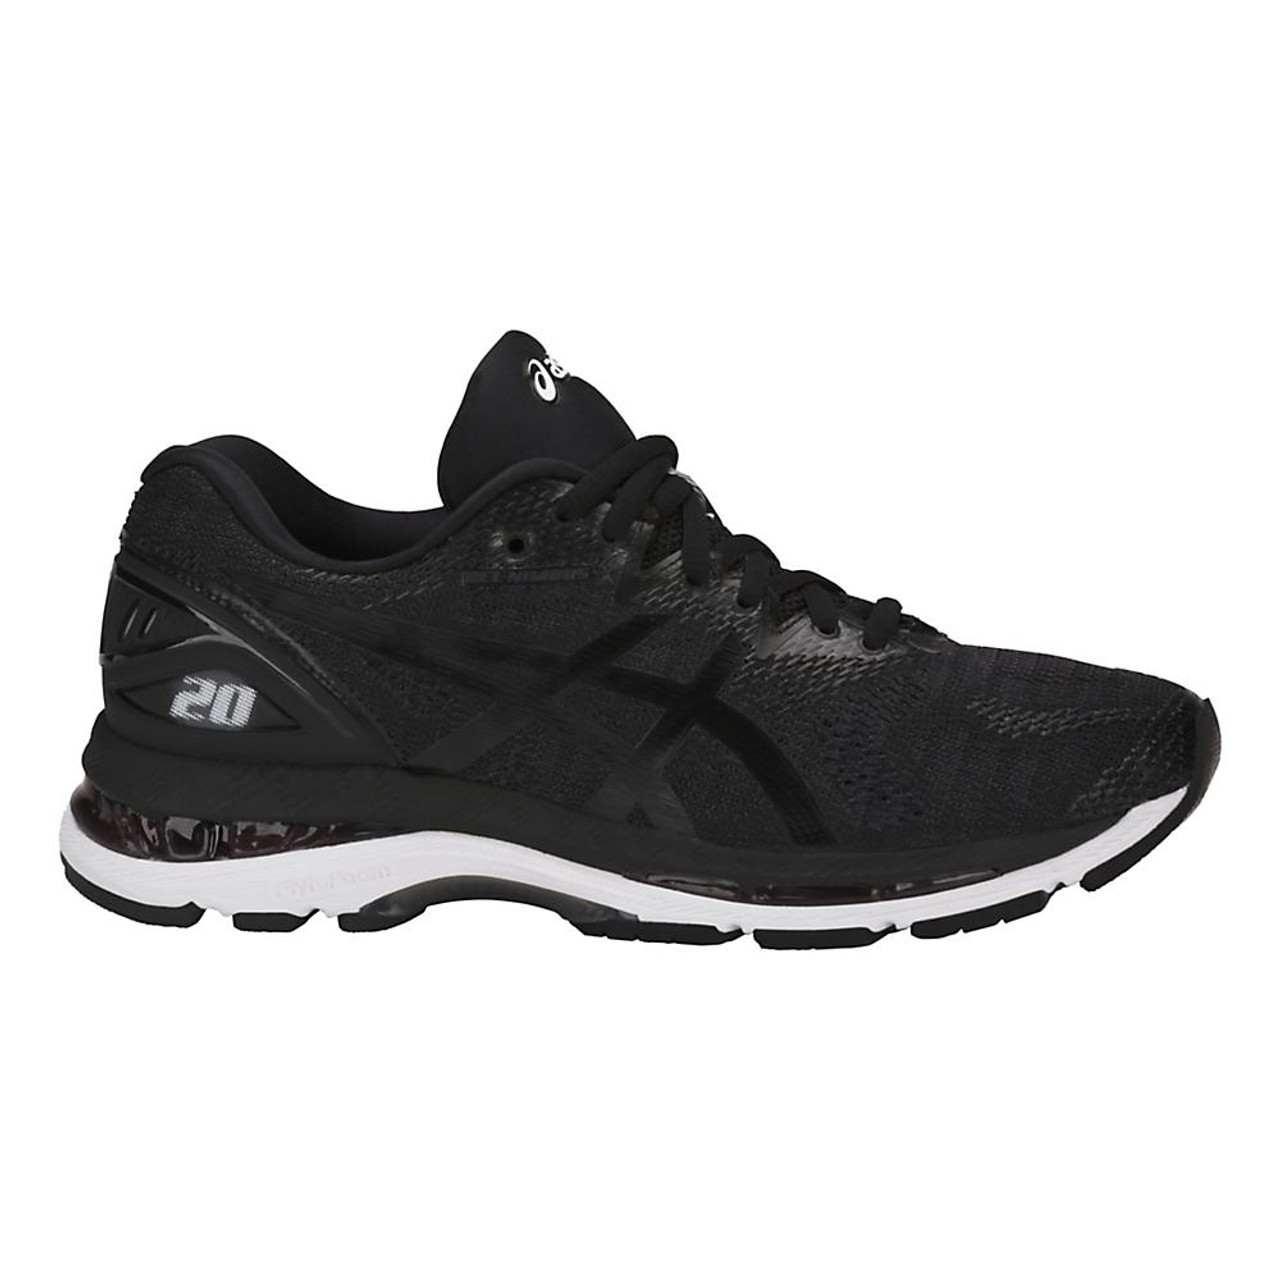 ASICS GEL-Nimbus 20 Running Shoes 